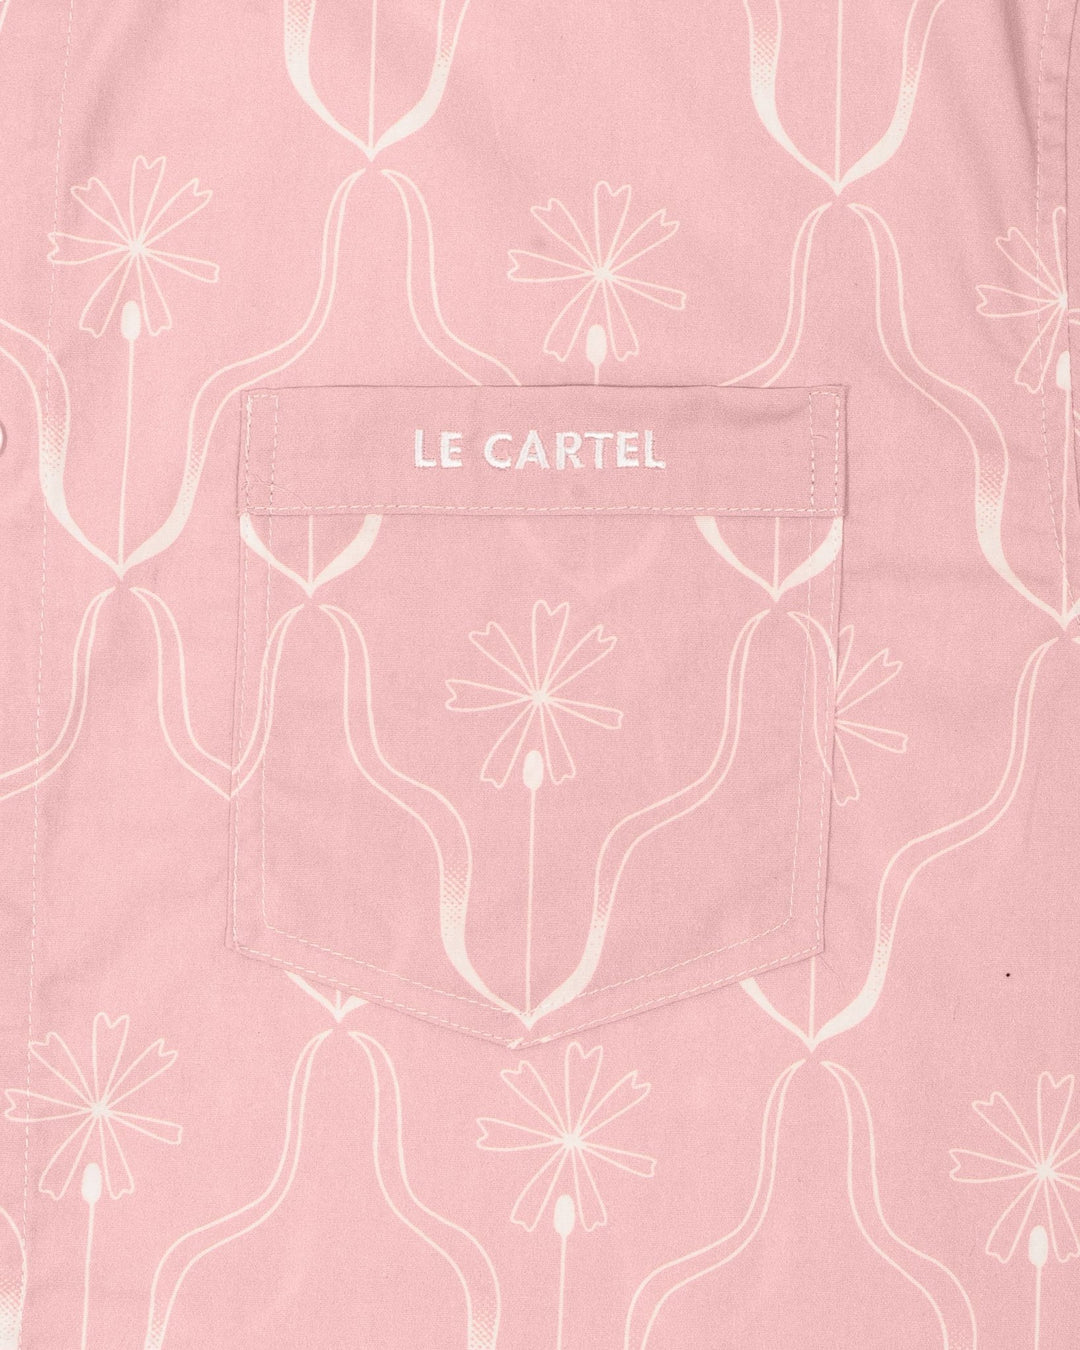 FLORET・Chemise imprimée unisexe・Rose - Le Cartel